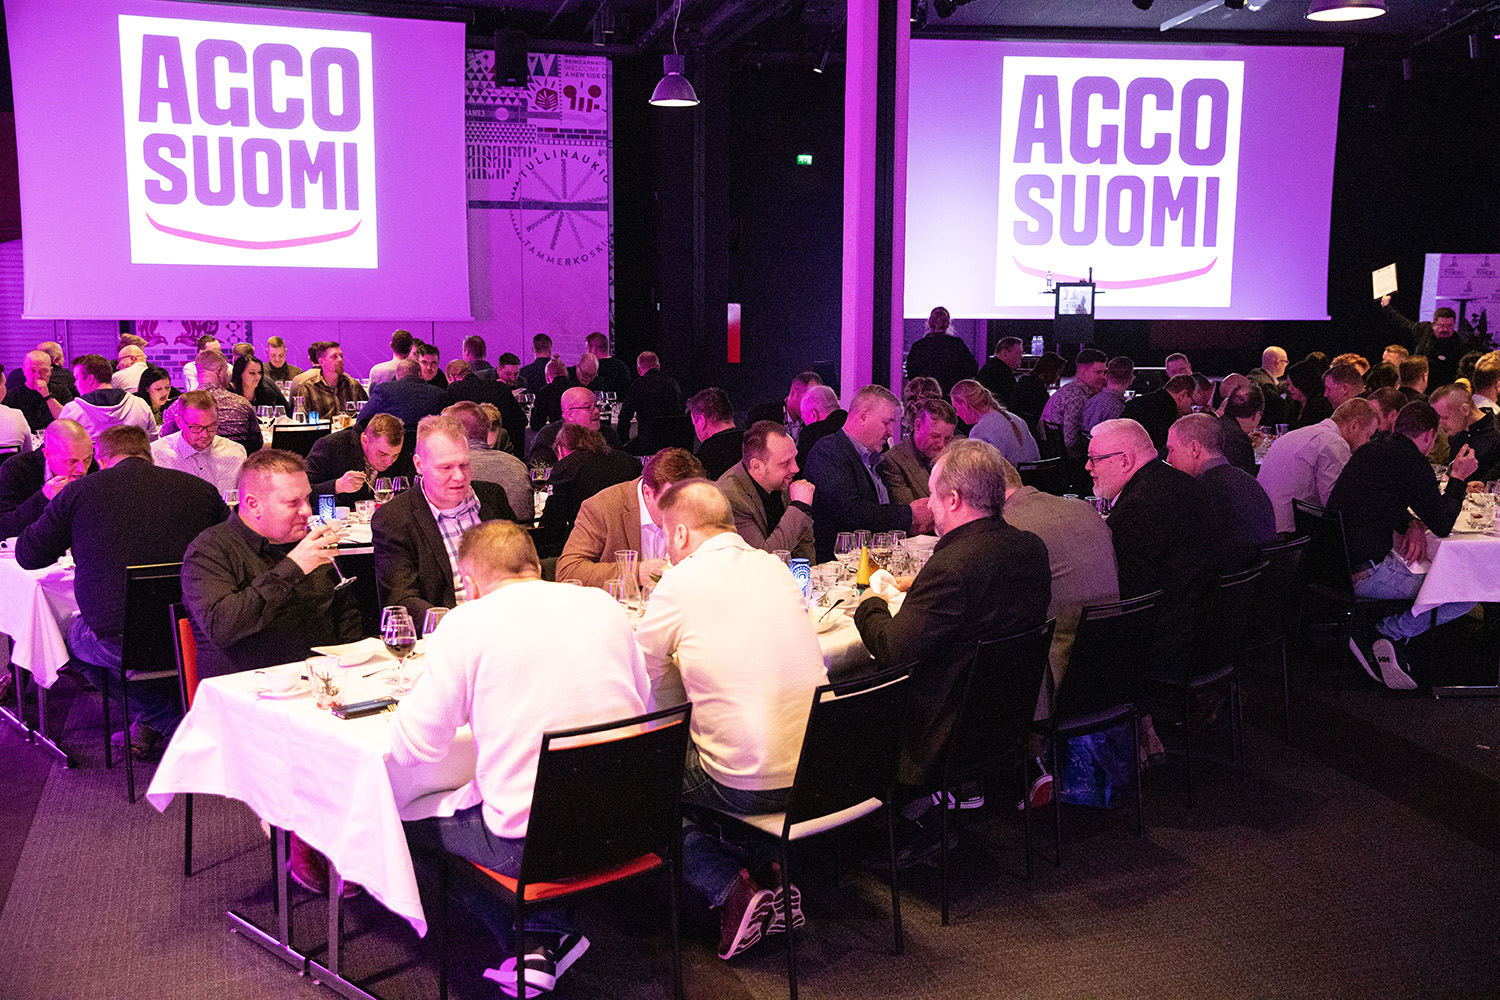 AGCO Suomen vajaat 200 työntekijää kokoontui Tampereelle kauden starttipalaveriin. Lisäksi palveluverkostoon kuuluu noin 250 yksityisten huoltofirmojen työntekijää. Yhteensä suomalaisten asiakkaiden tukena työskentelee yli 400 henkilöä varsinaisen tehtaan henkilöstön lisäksi.